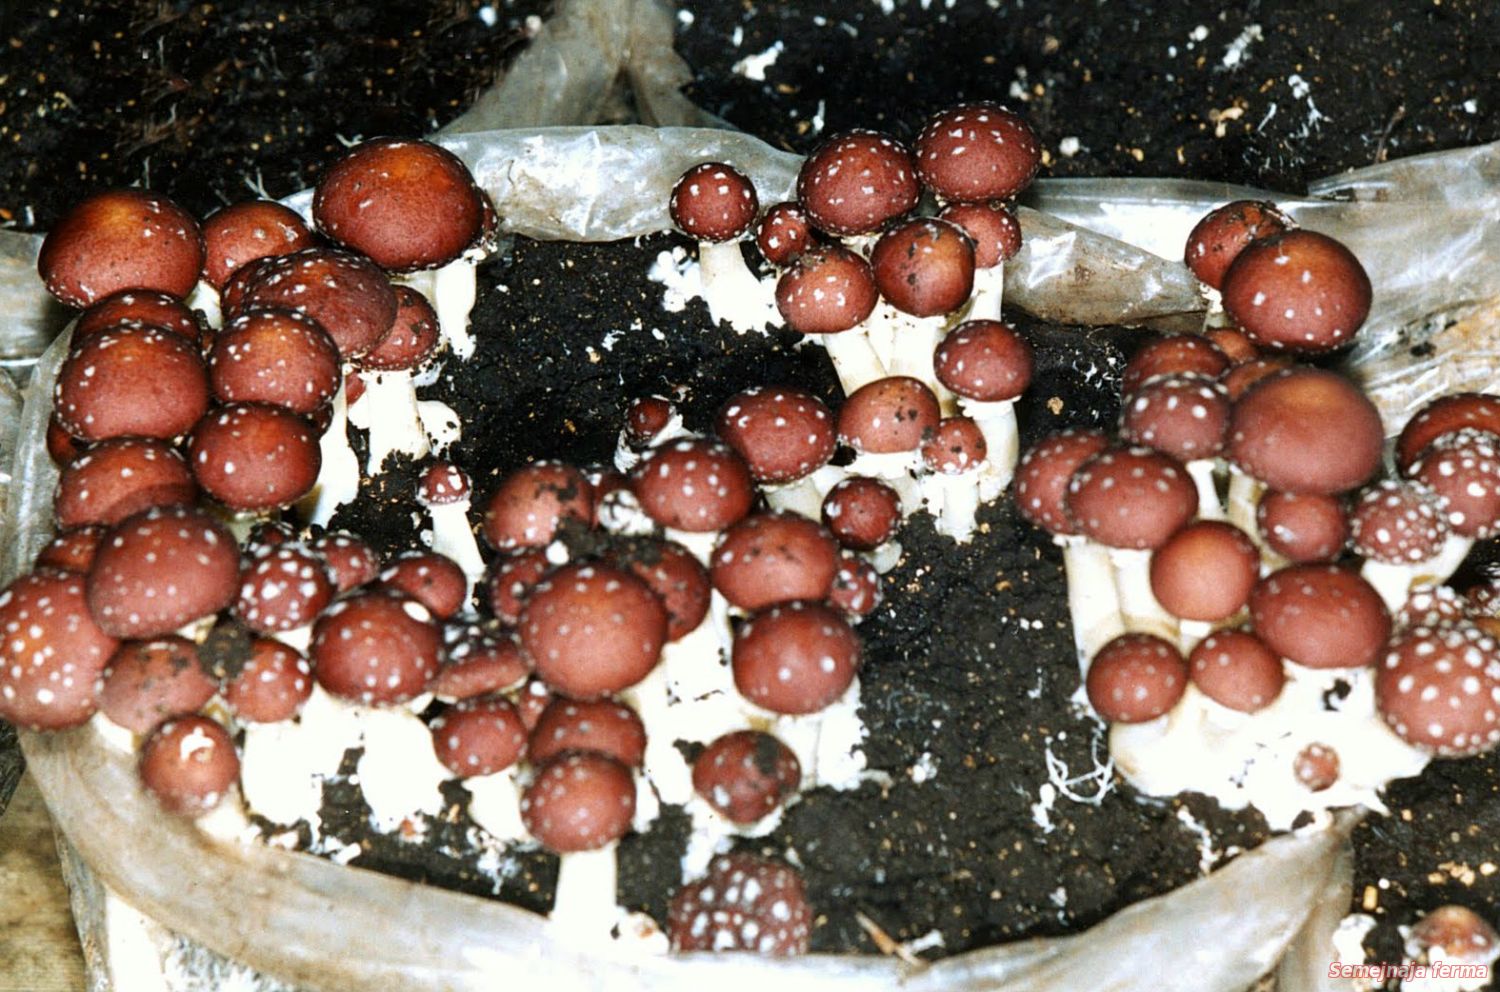 фото грибов выращенных в домашних условиях